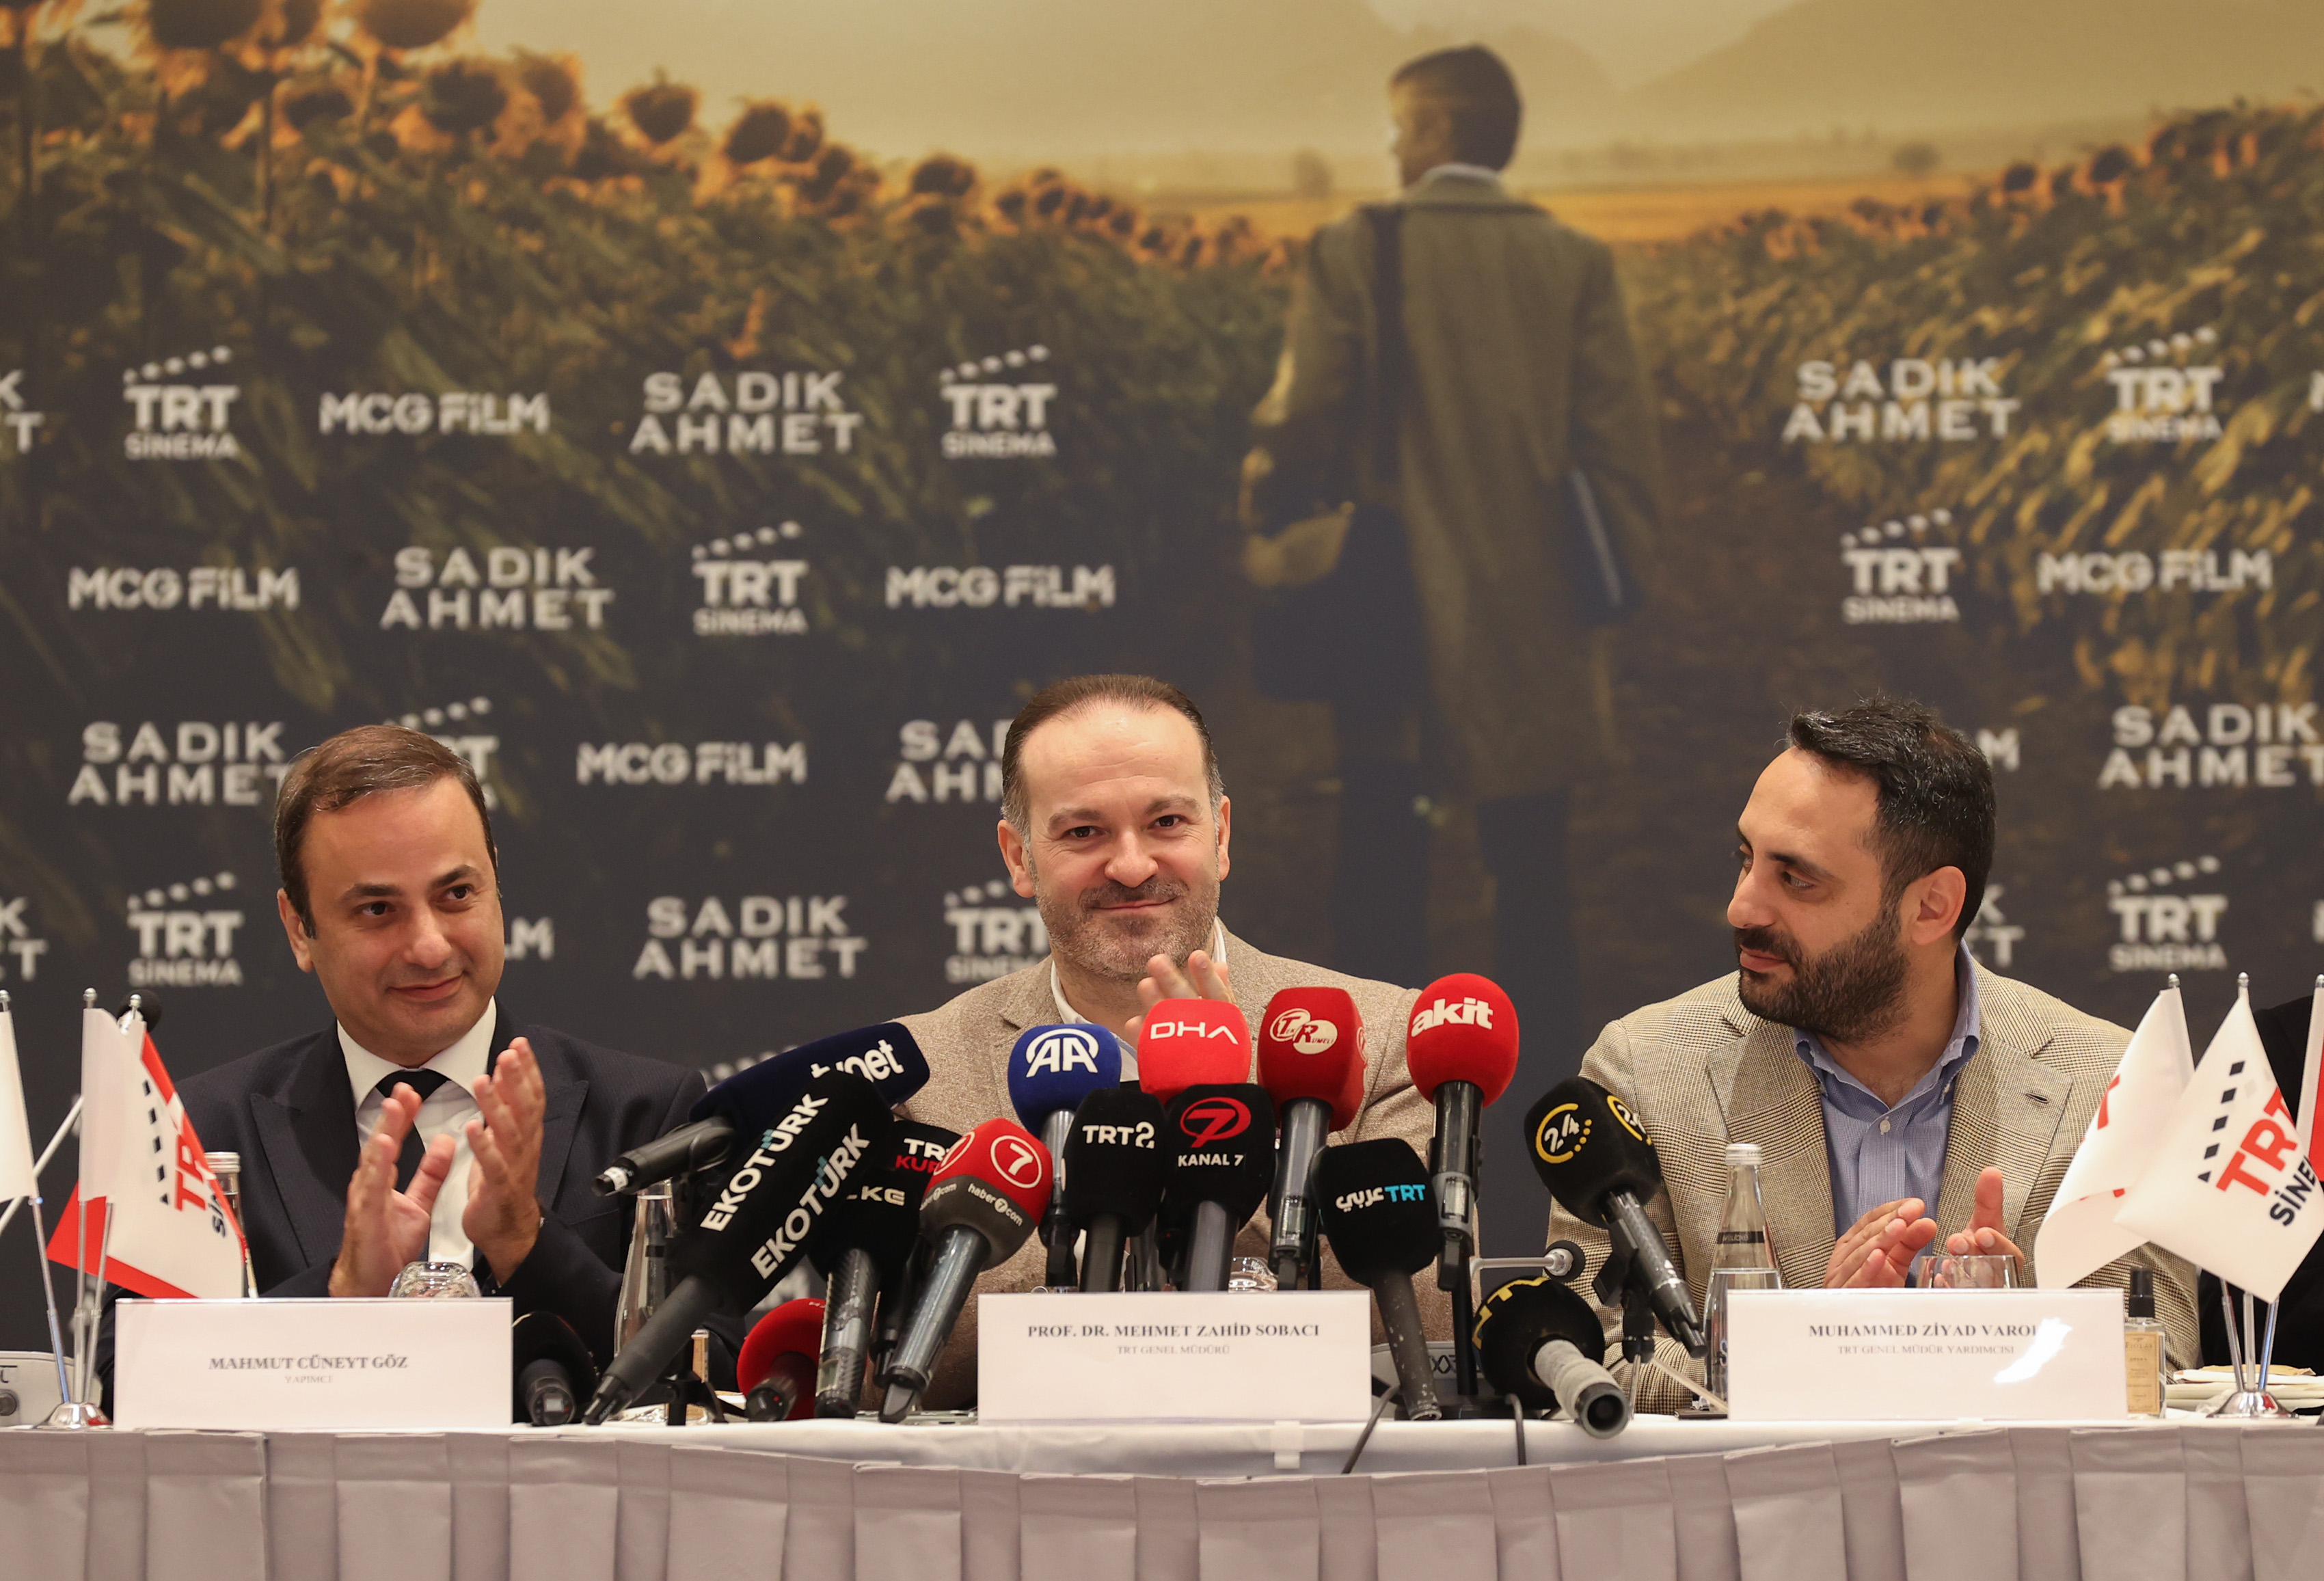 TRT ortak yapımı "Sadık Ahmet" filmi 29 Aralık'ta vizyona girecek